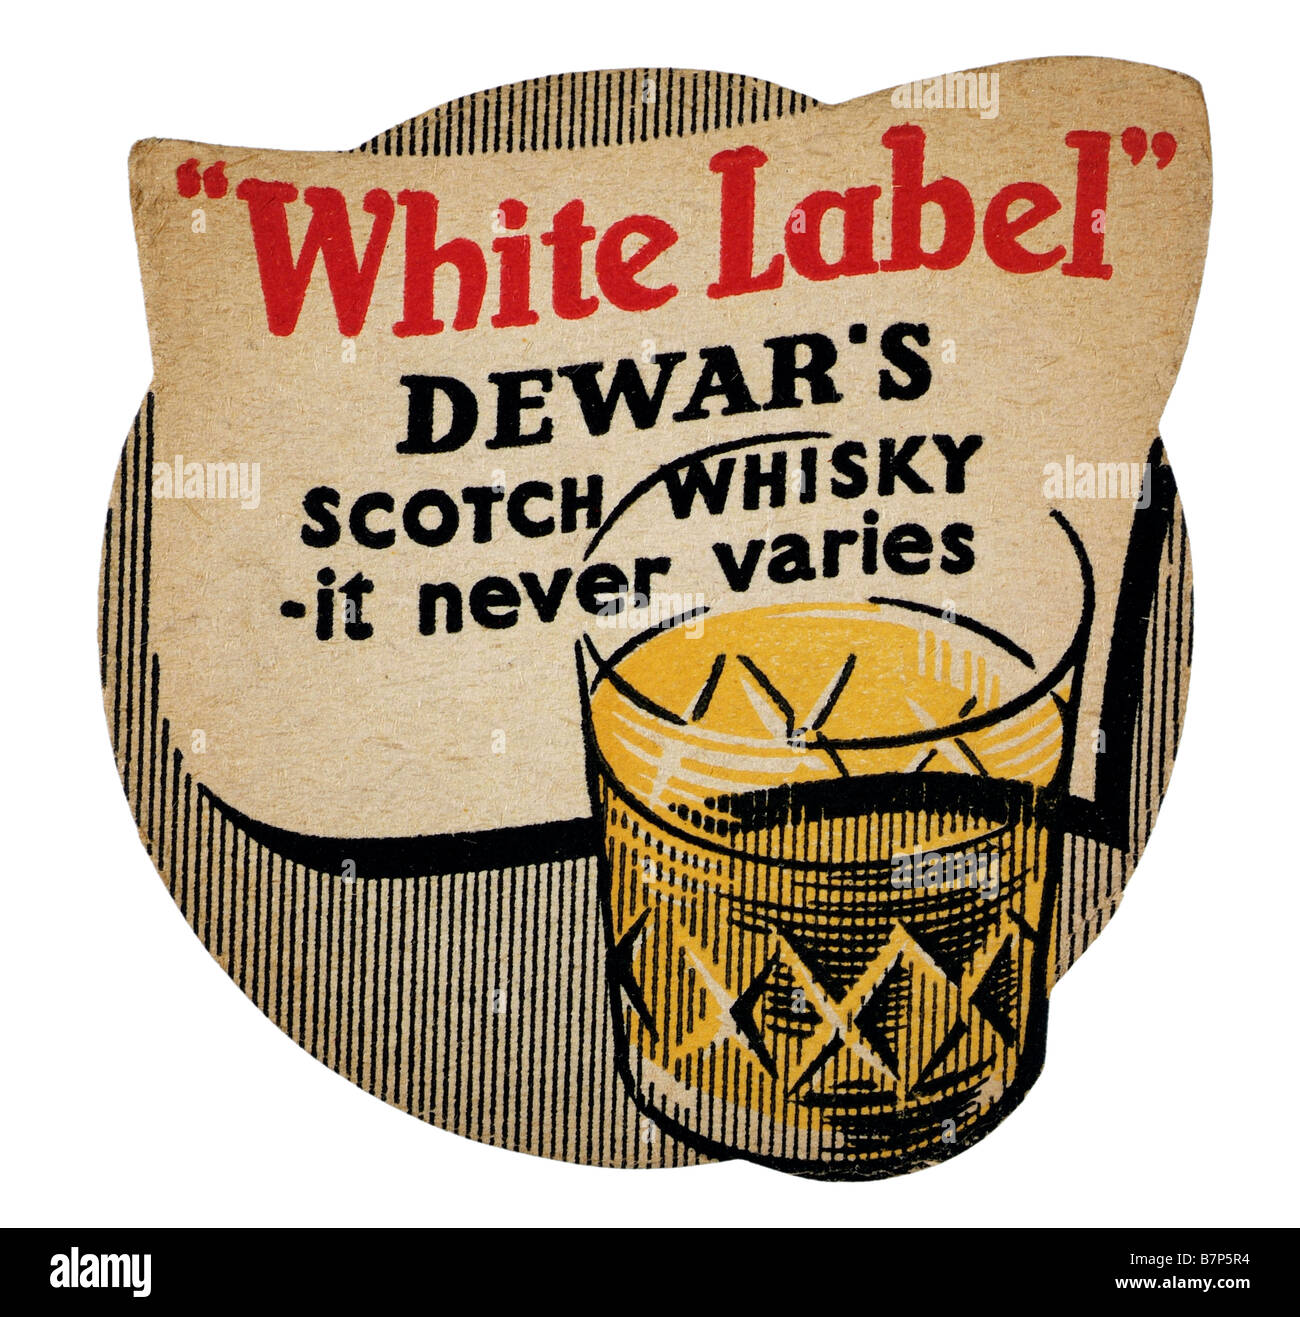 White label Dewar's scotch whisky neber varie la bière pub Pinte branb mat de verre d'alcool de malt shot coaster Banque D'Images